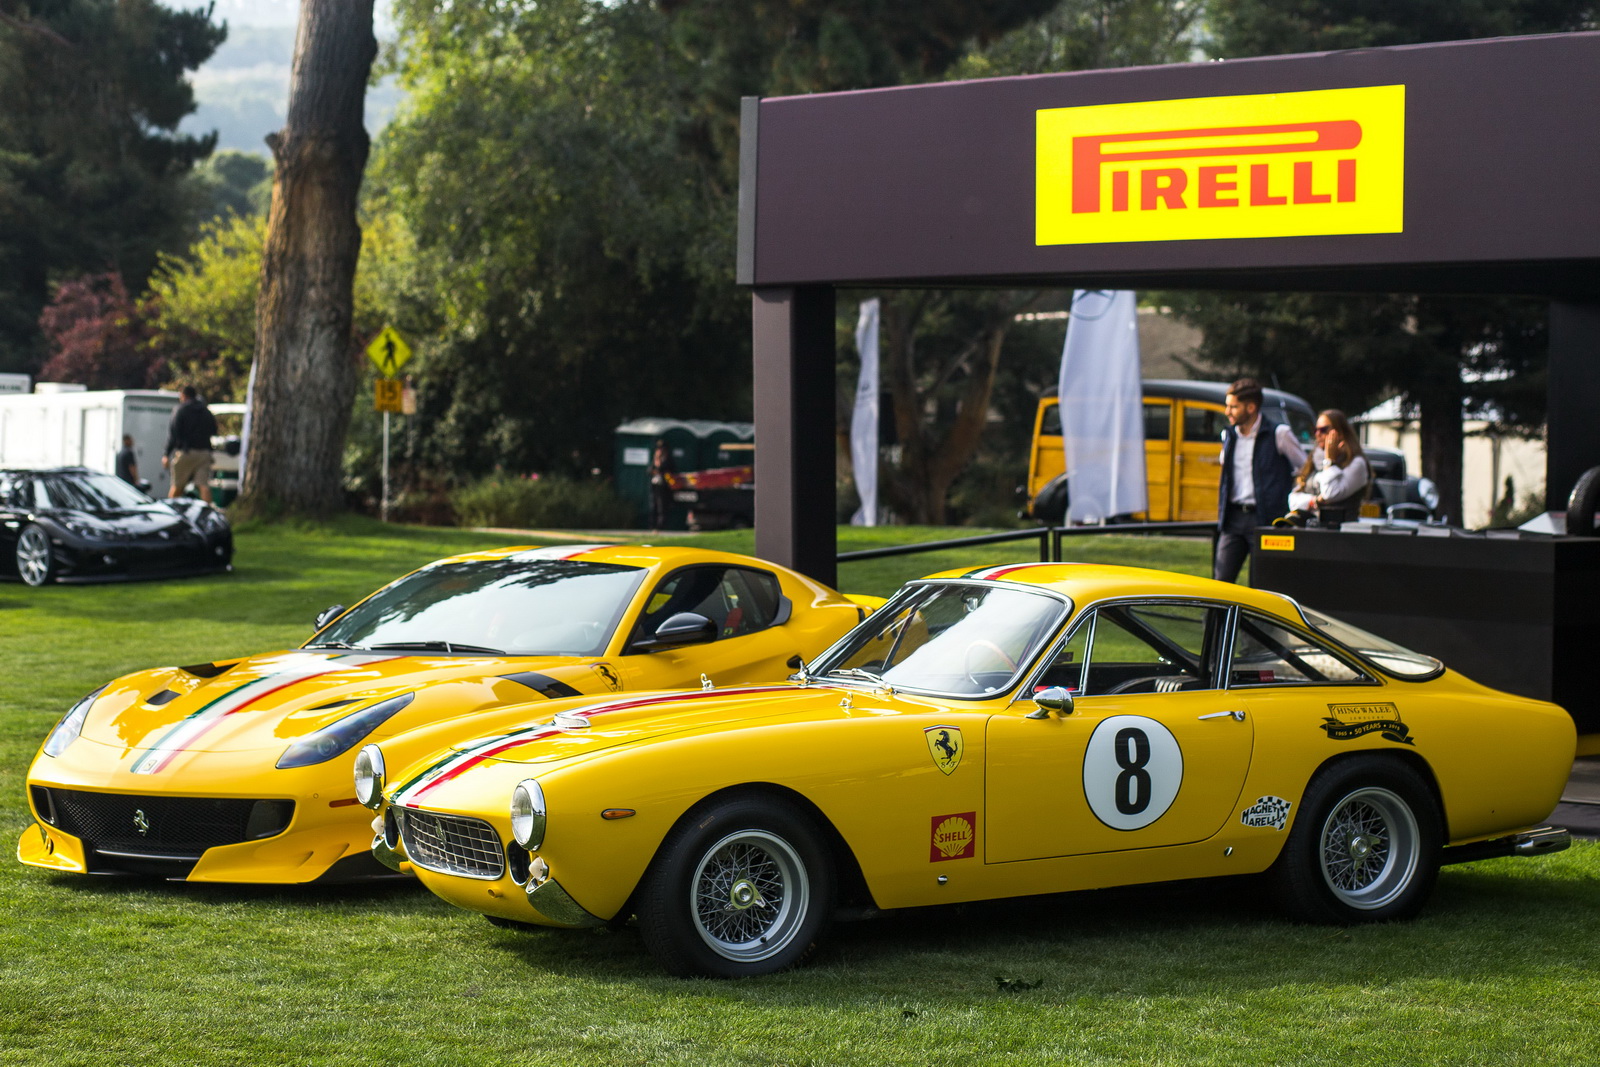 Pirelli Luncurkan Ban Collezione Untuk Mobil Klasik Tahun 50 An